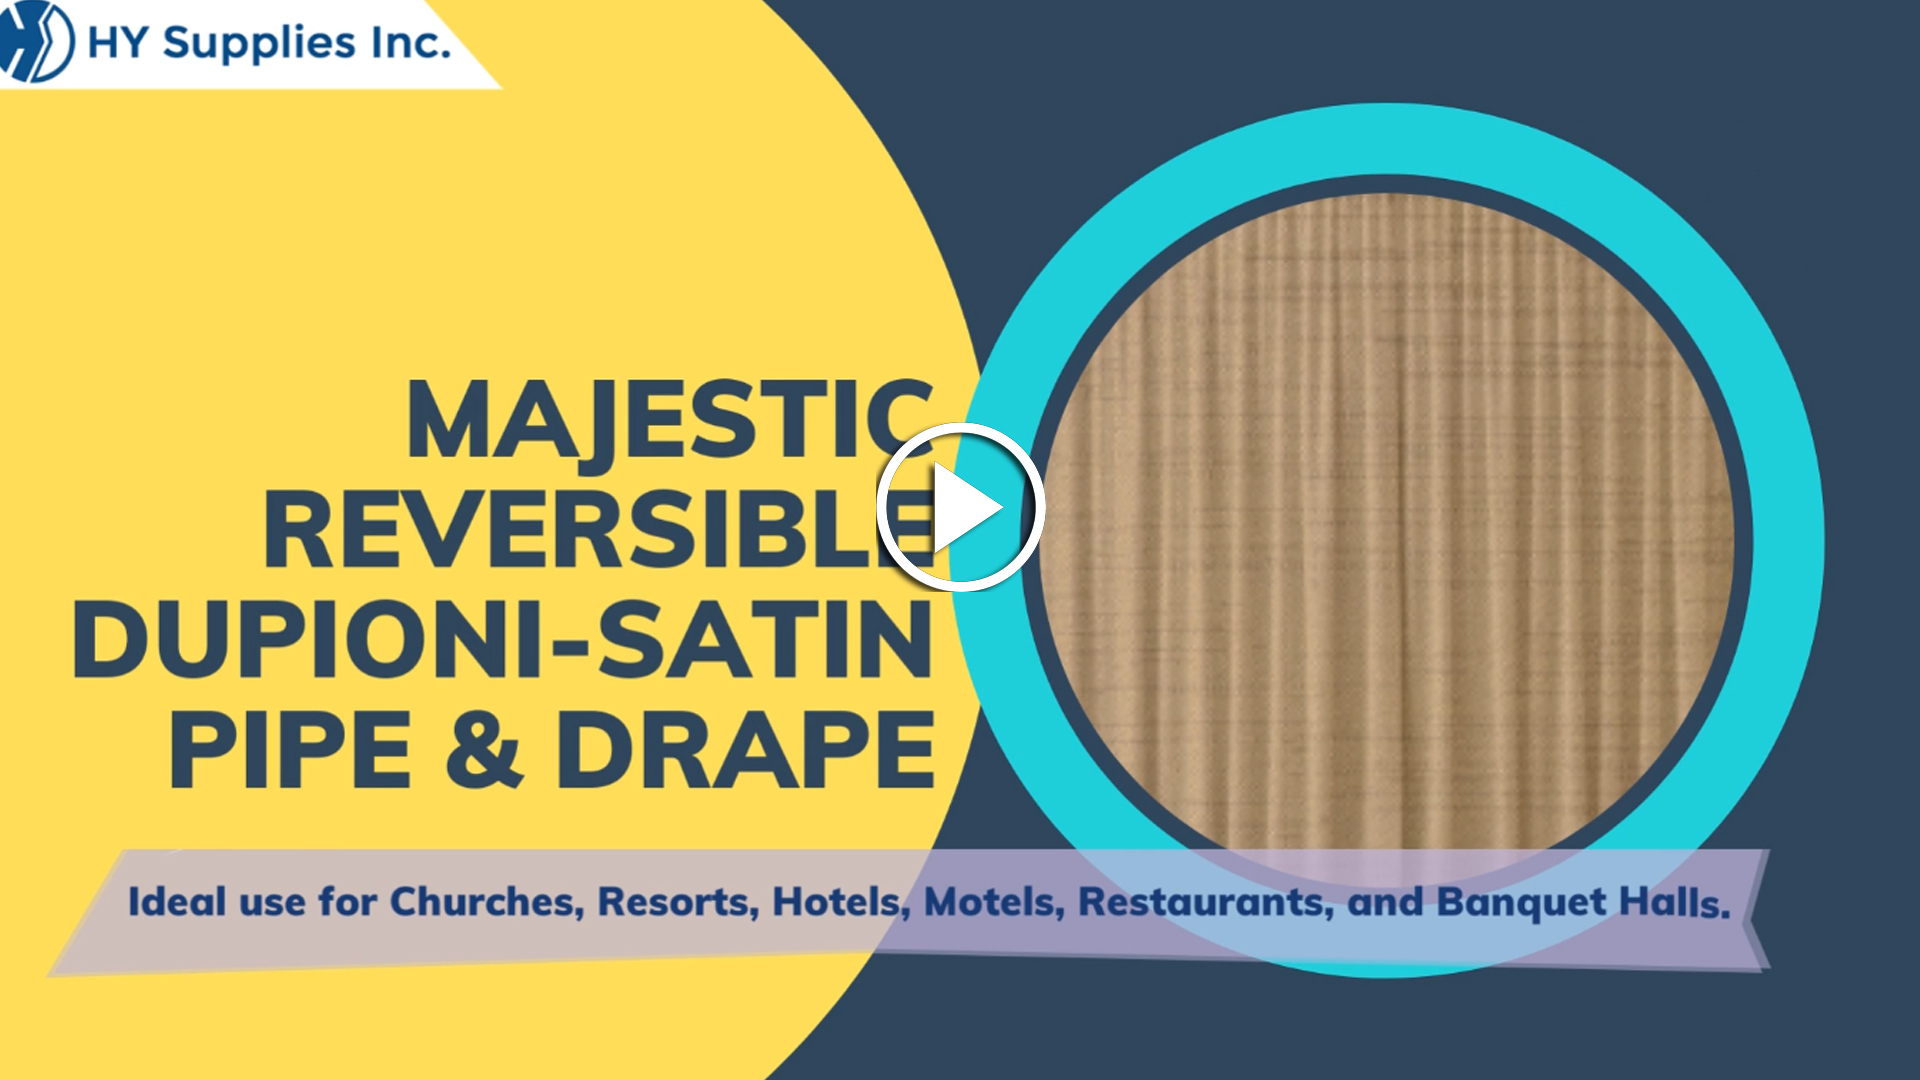 Majestic Reversible Dupioni-Satin Pipe & Drape